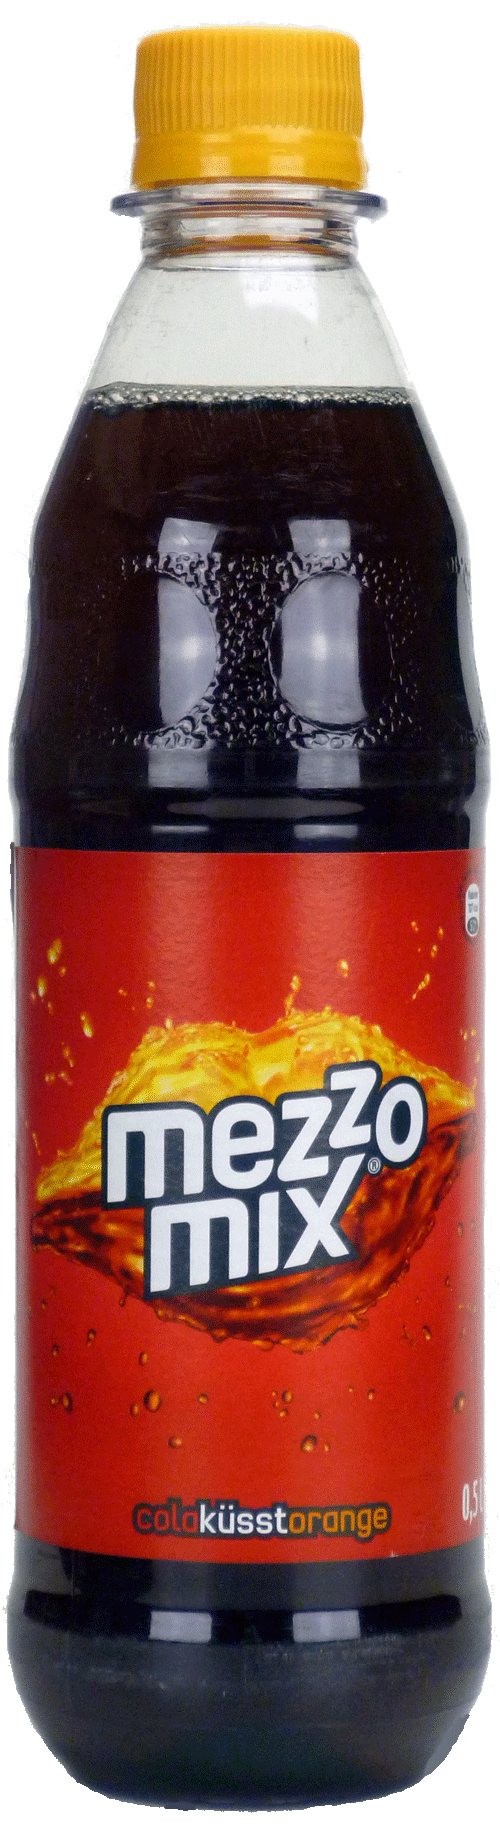 Mezzo Mix-image